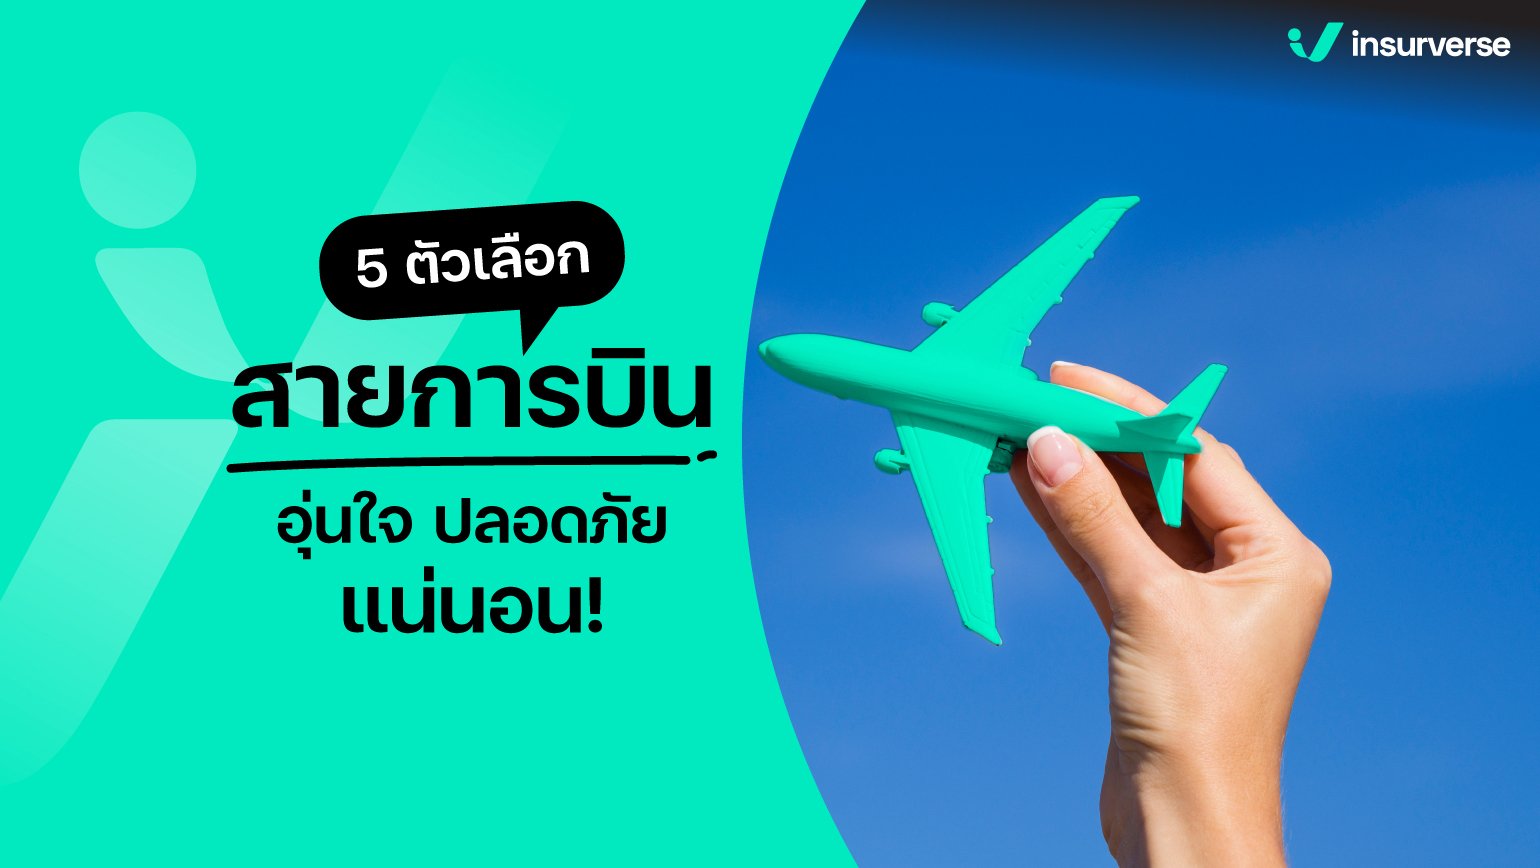 แค่ลองเปิดใจกับ 5 ตัวเลือกสายการบินในไทย รับรองอุ่นใจและปลอดภัยแน่นอน